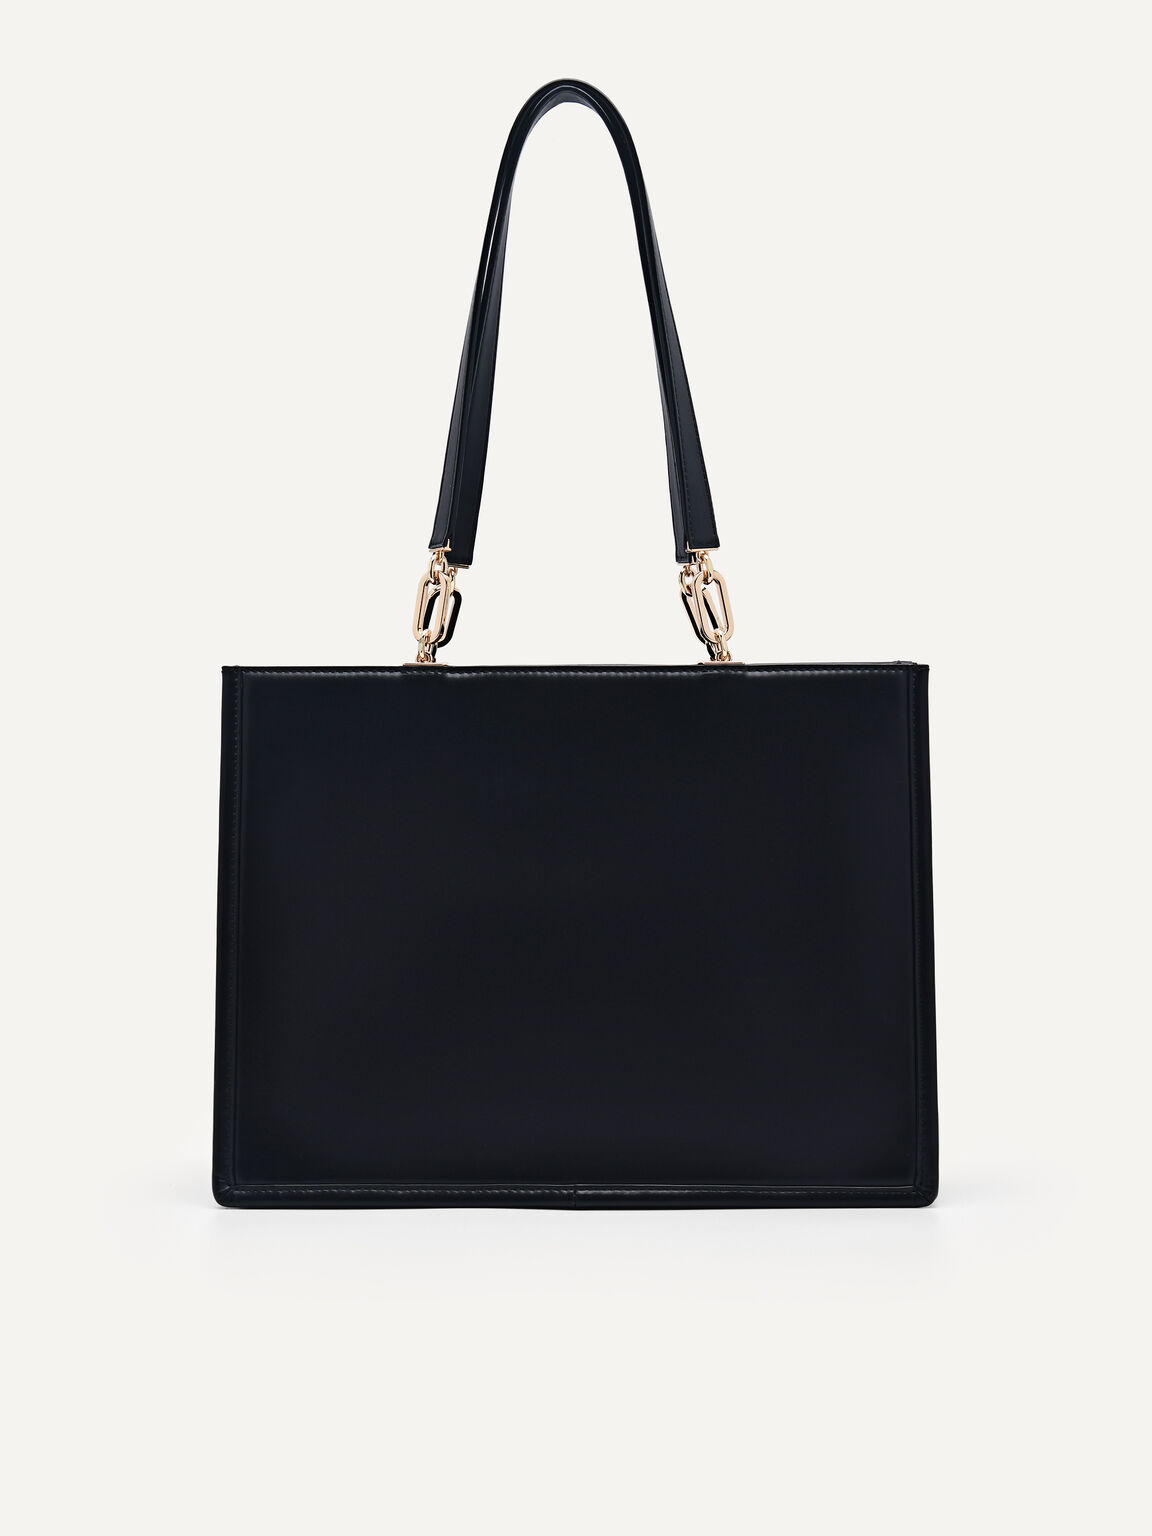 PEDRO Studio Rift Leather Shoulder Bag, Black